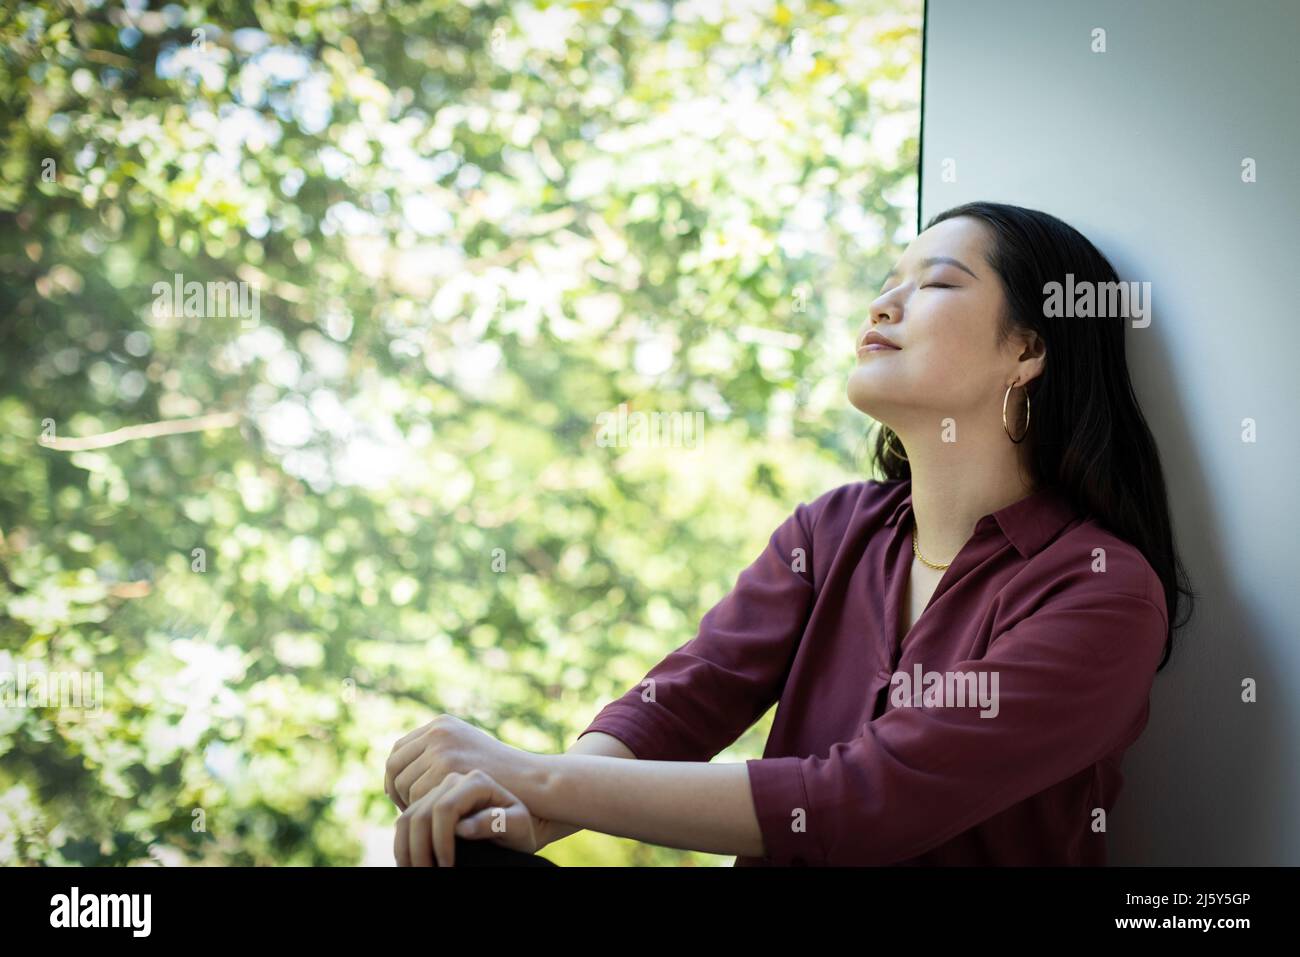 Ruhige junge Frau, die sich am Fenster mit Blick auf den grünen Baum entspannt Stockfoto